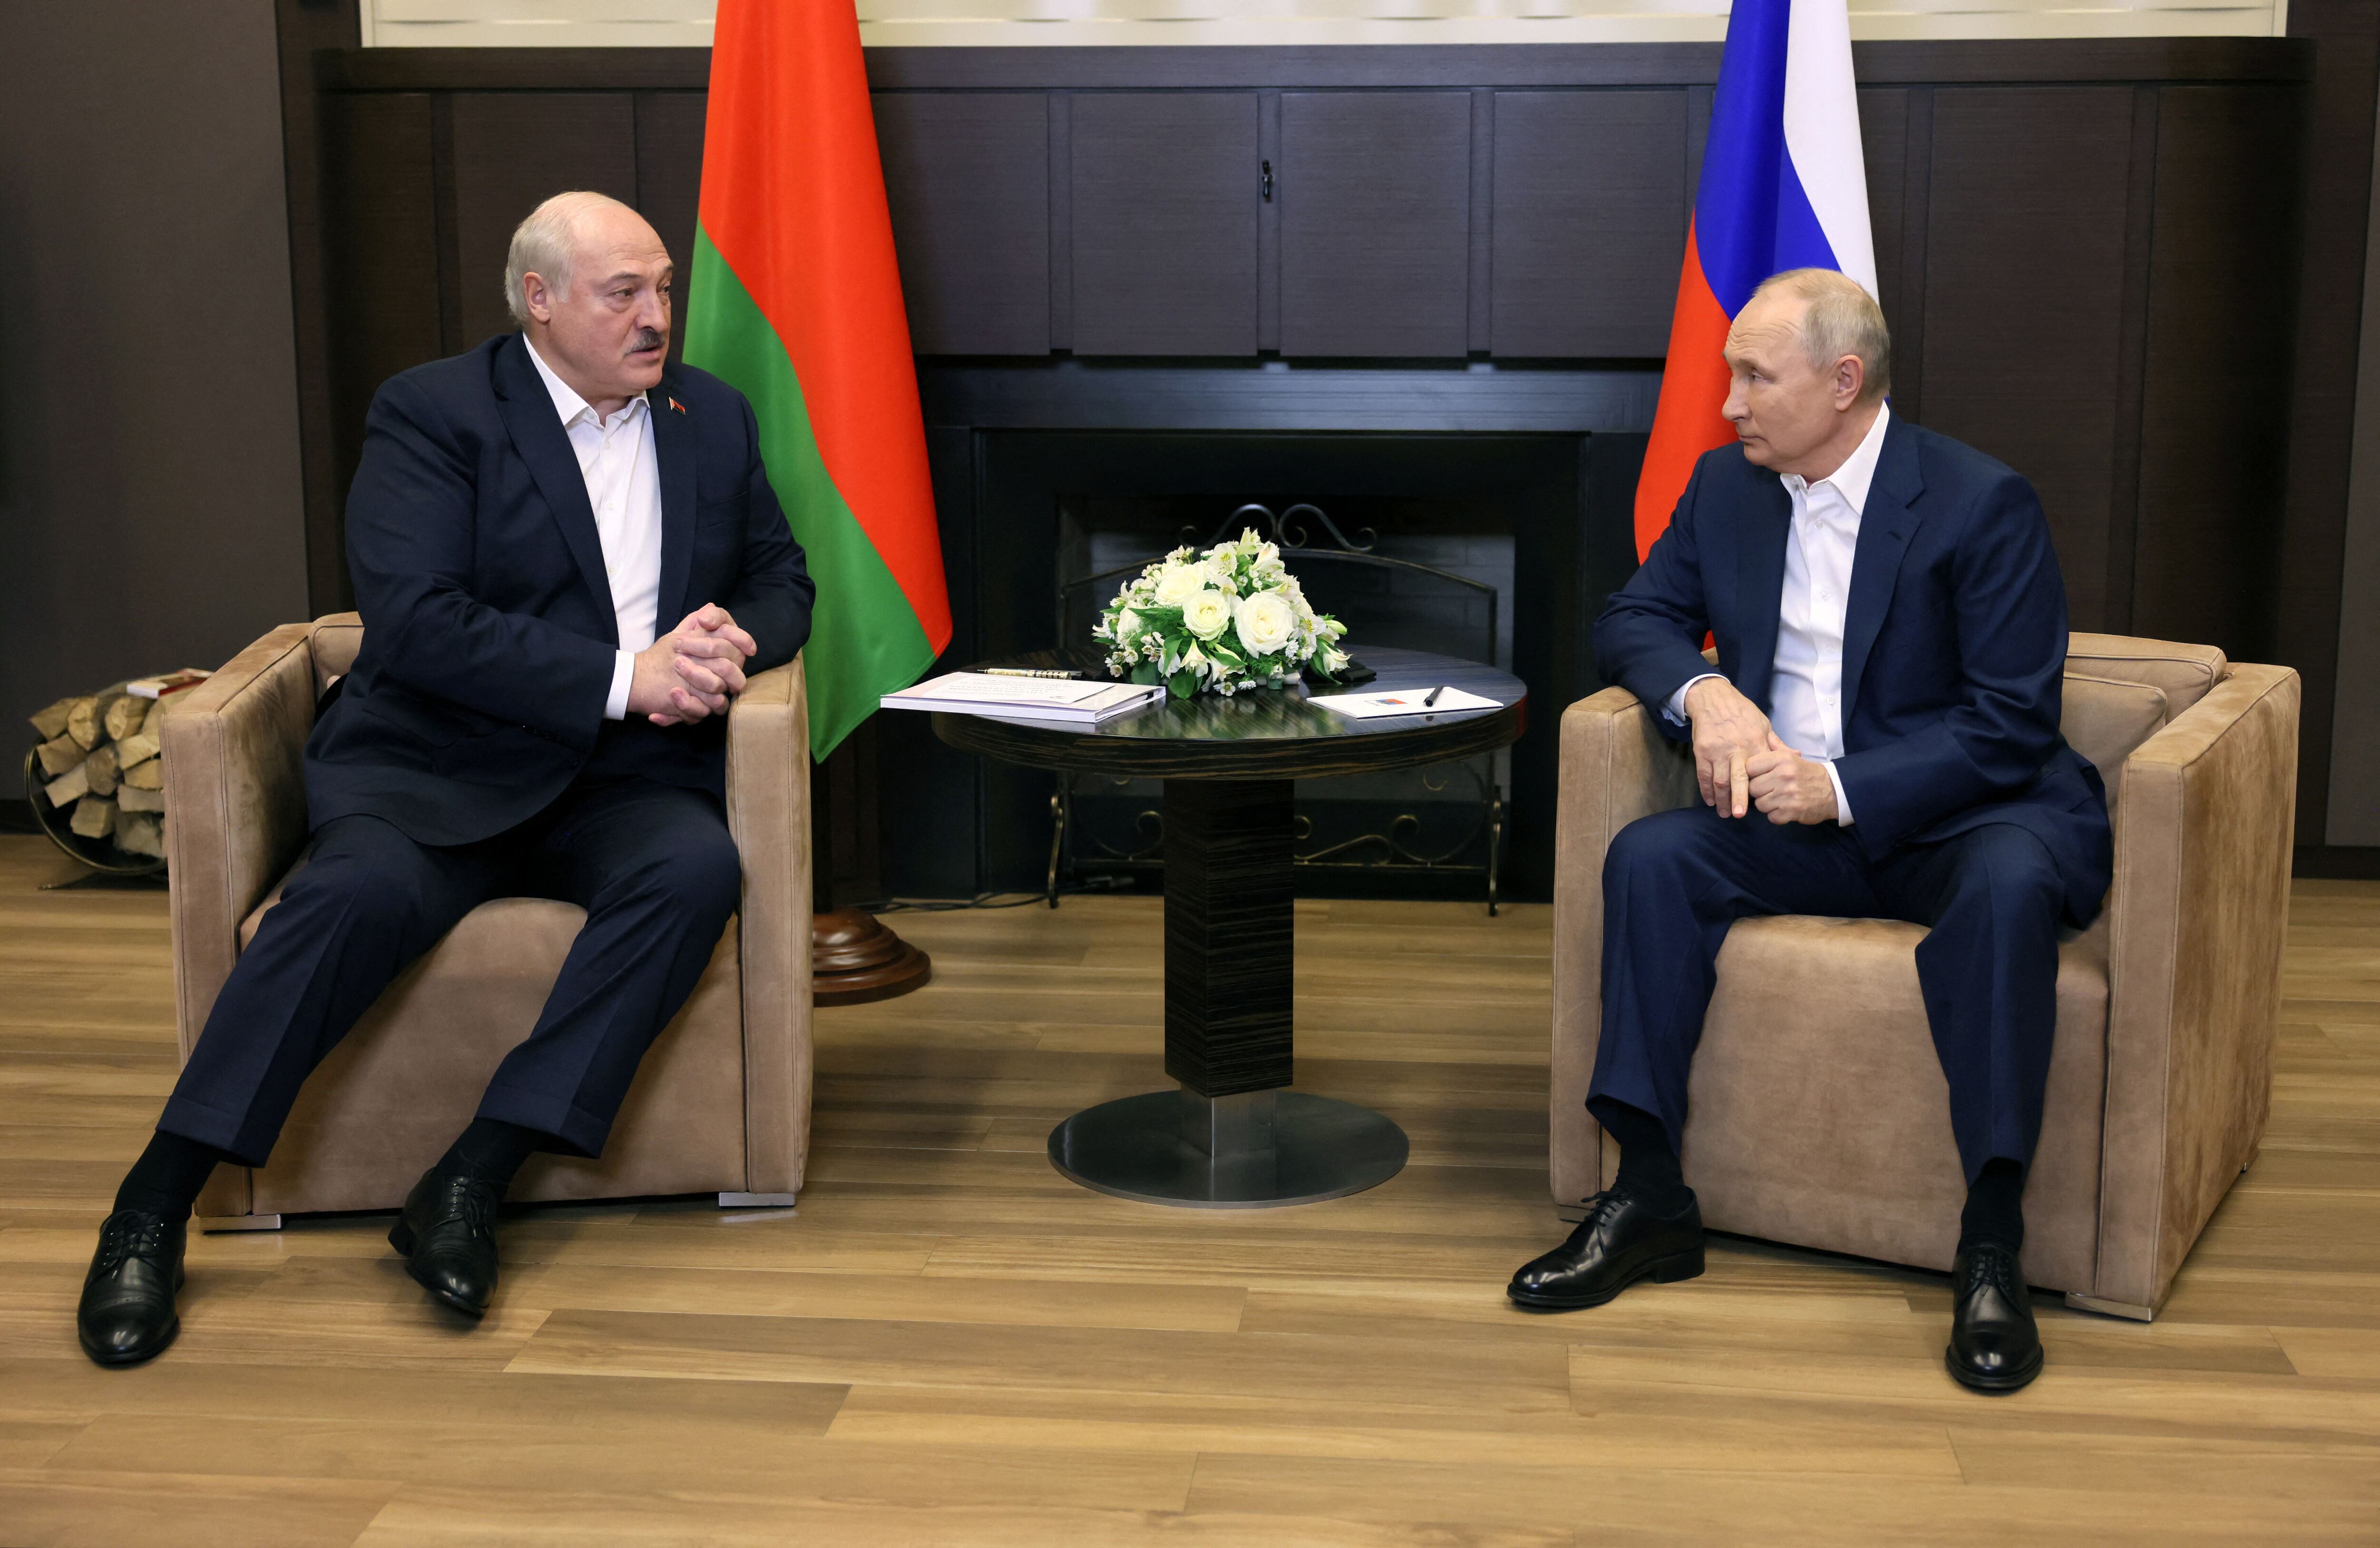 El presidente ruso Vladimir Putin y el presidente bielorruso Alexandre Lukashenko en una reunión en Sochi, Rusia (Sputnik/Mikhail Metzel/REUTERS)